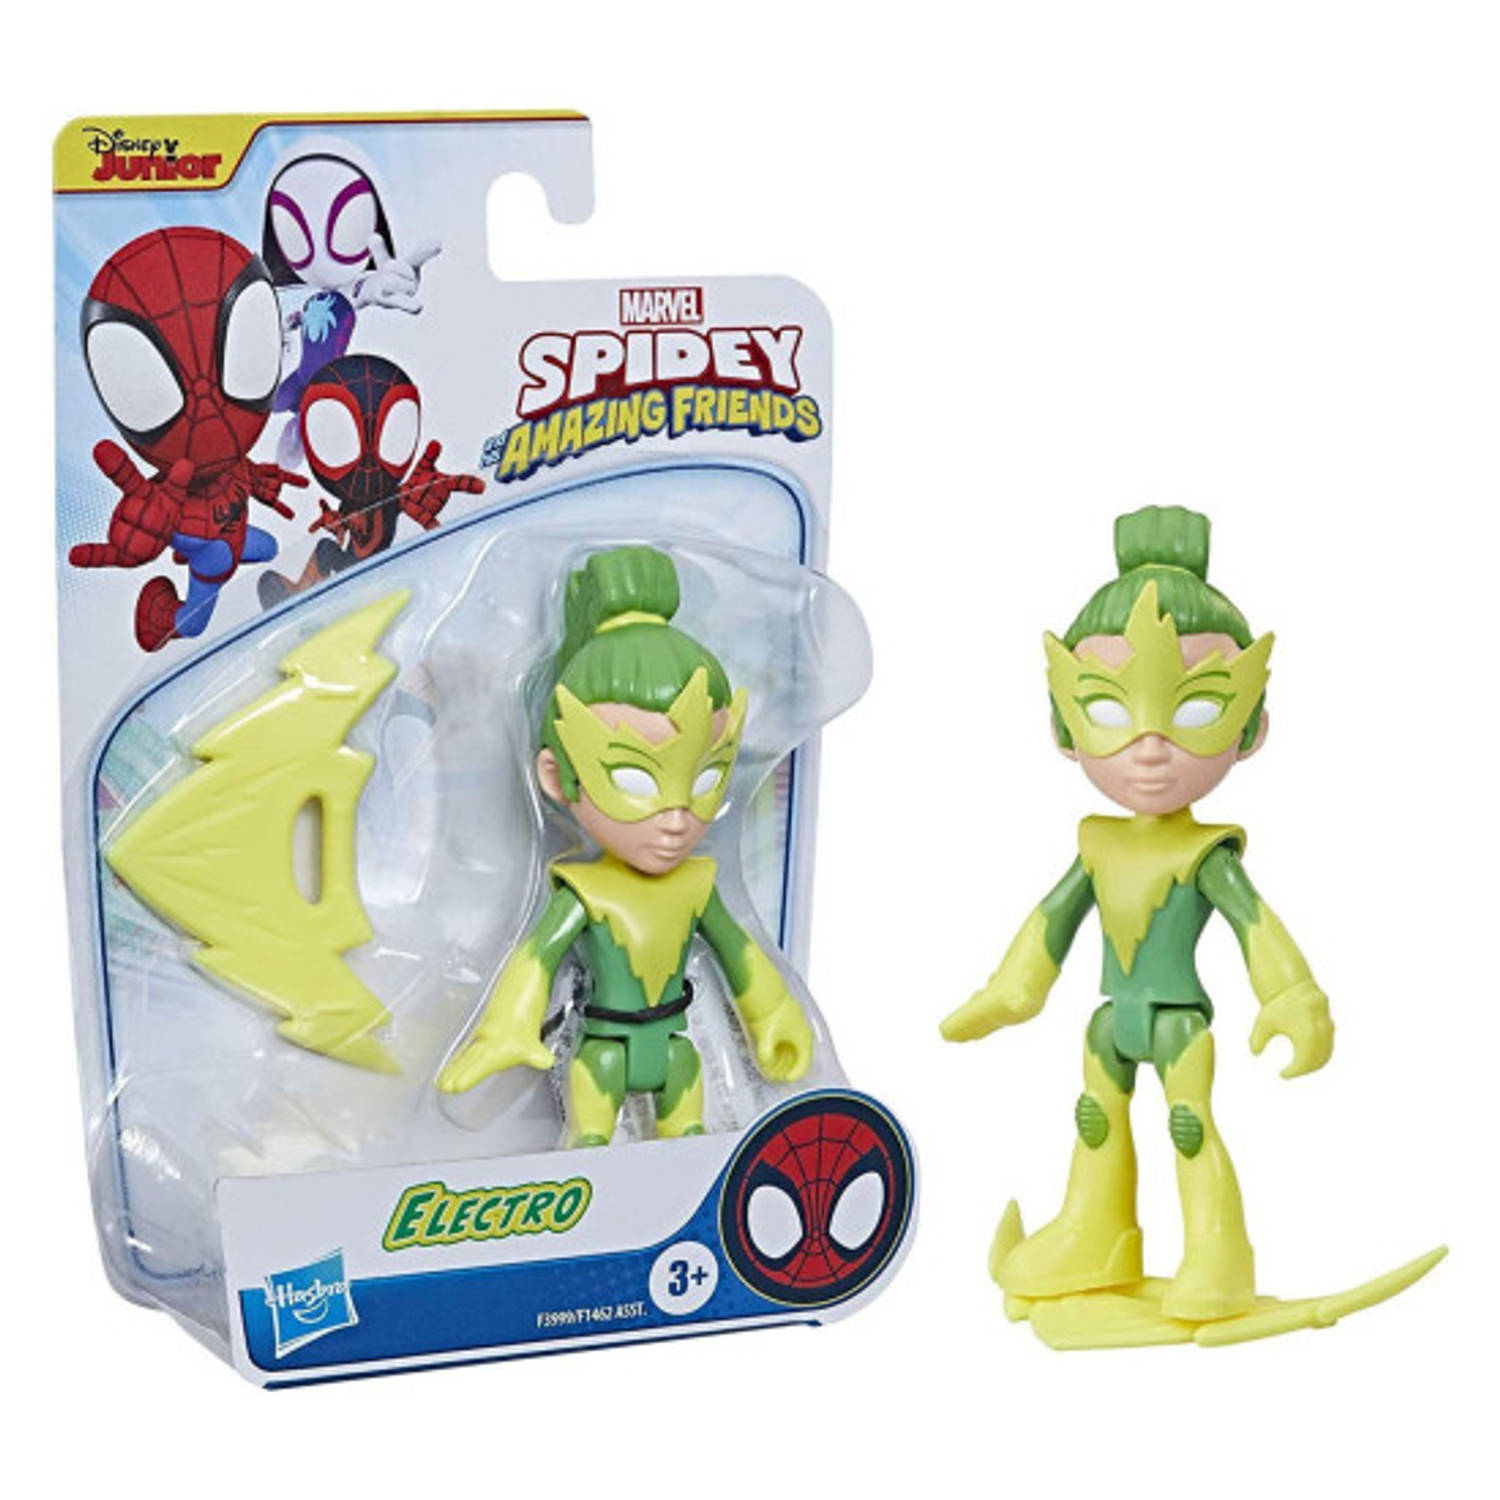 Spidey & Amazing Friends Hero Figure - Electro - Speelfiguur